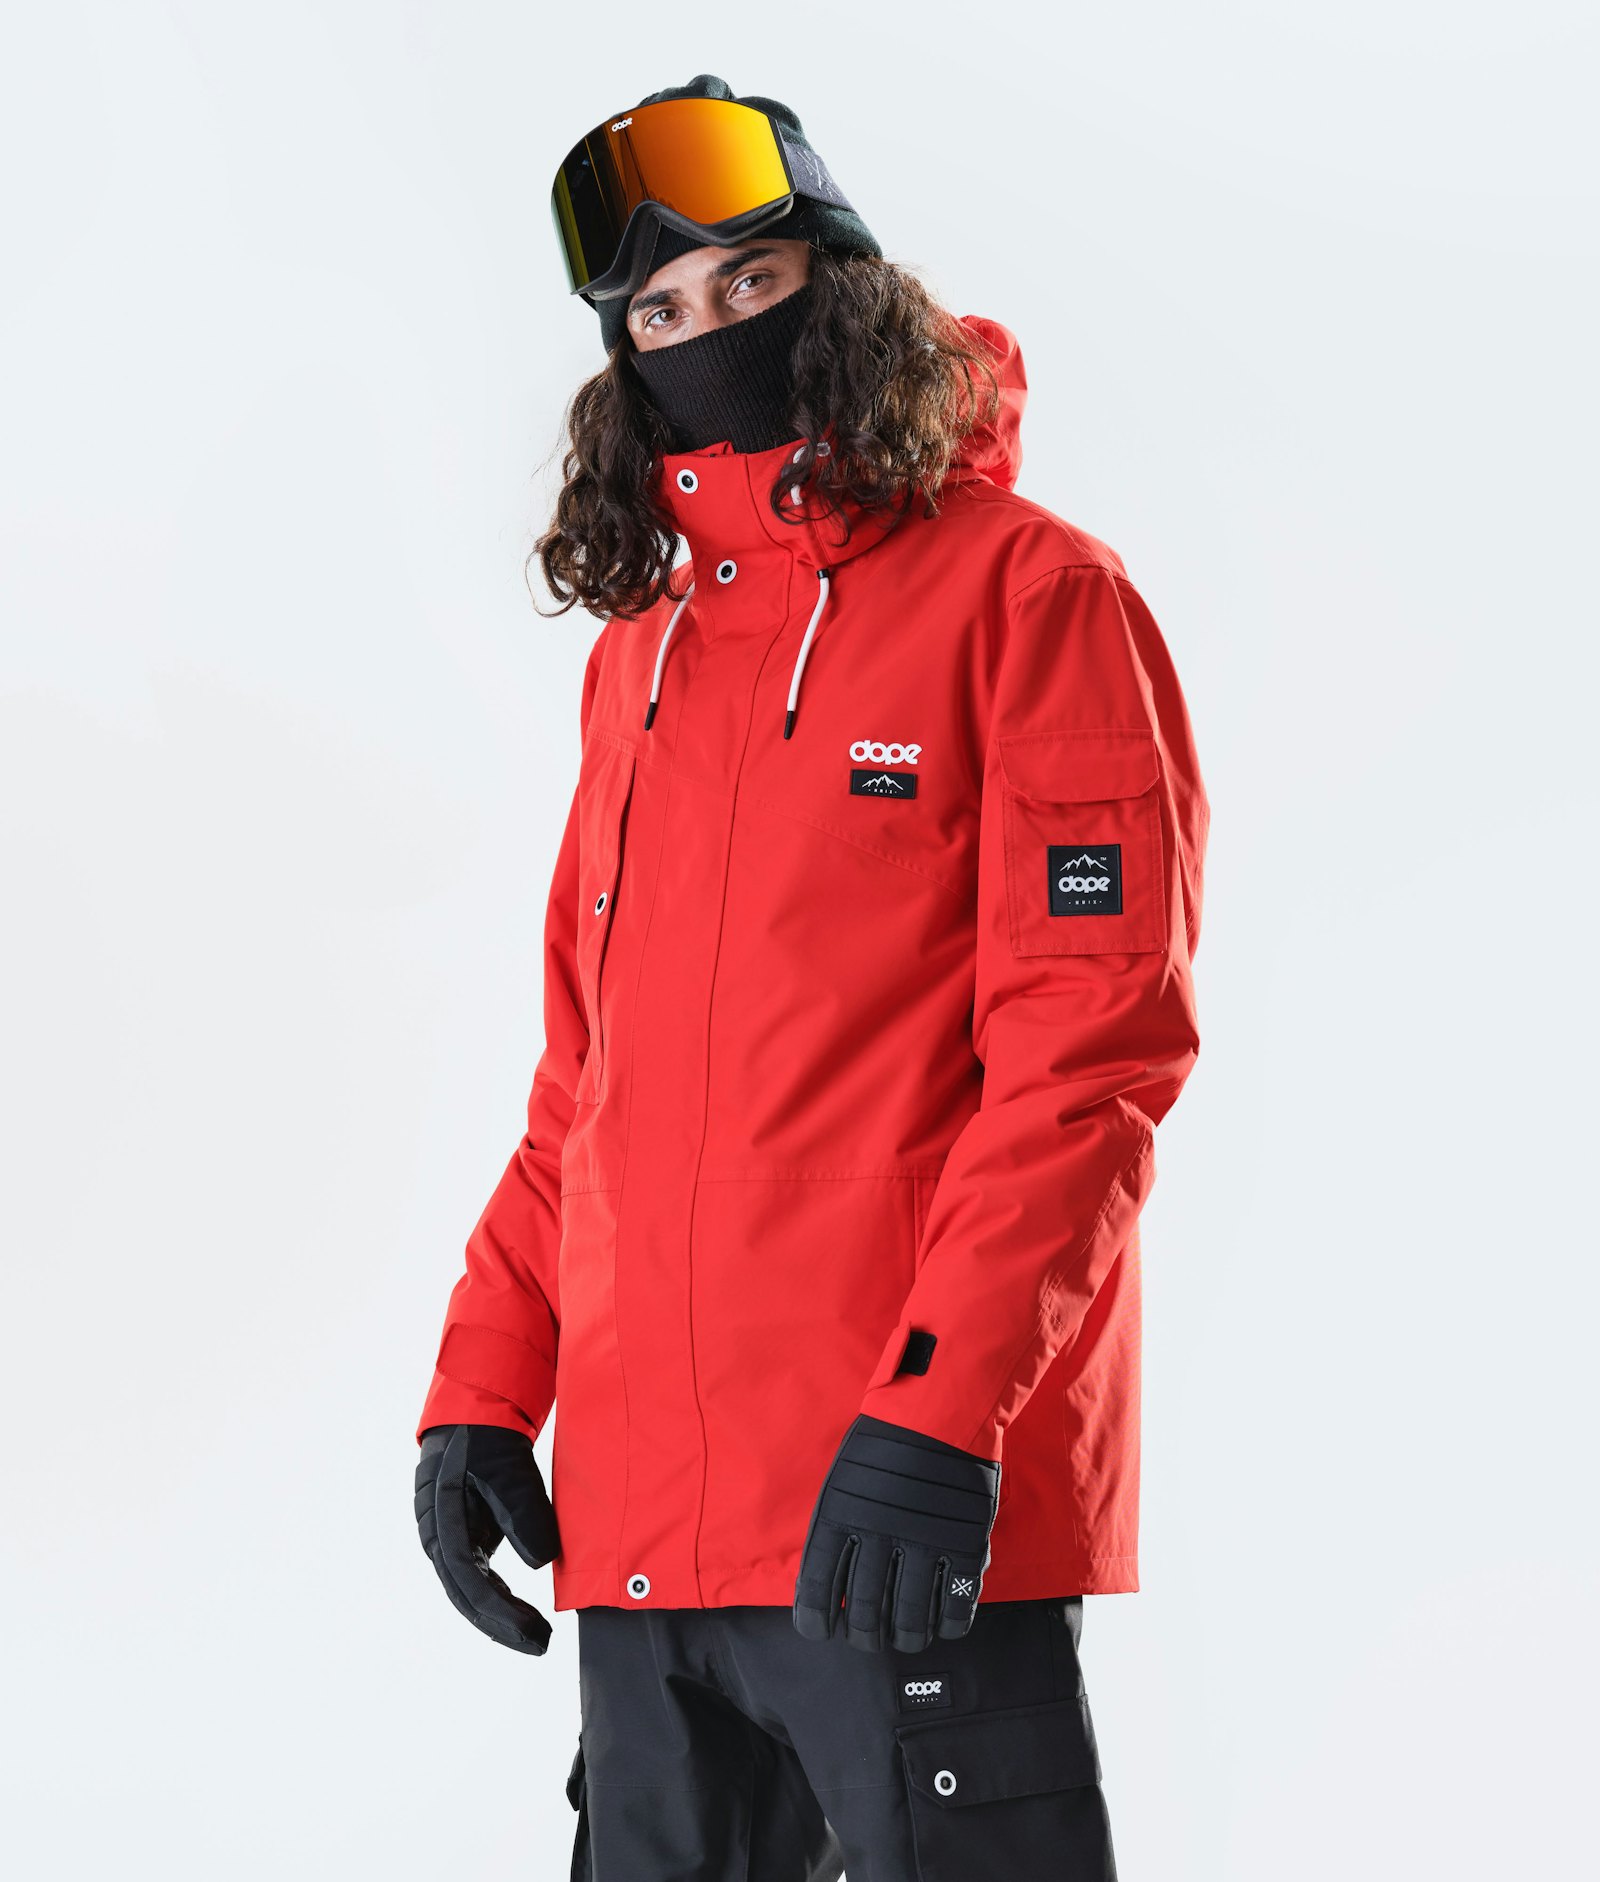 Adept 2020 Snowboardjacke Herren Red